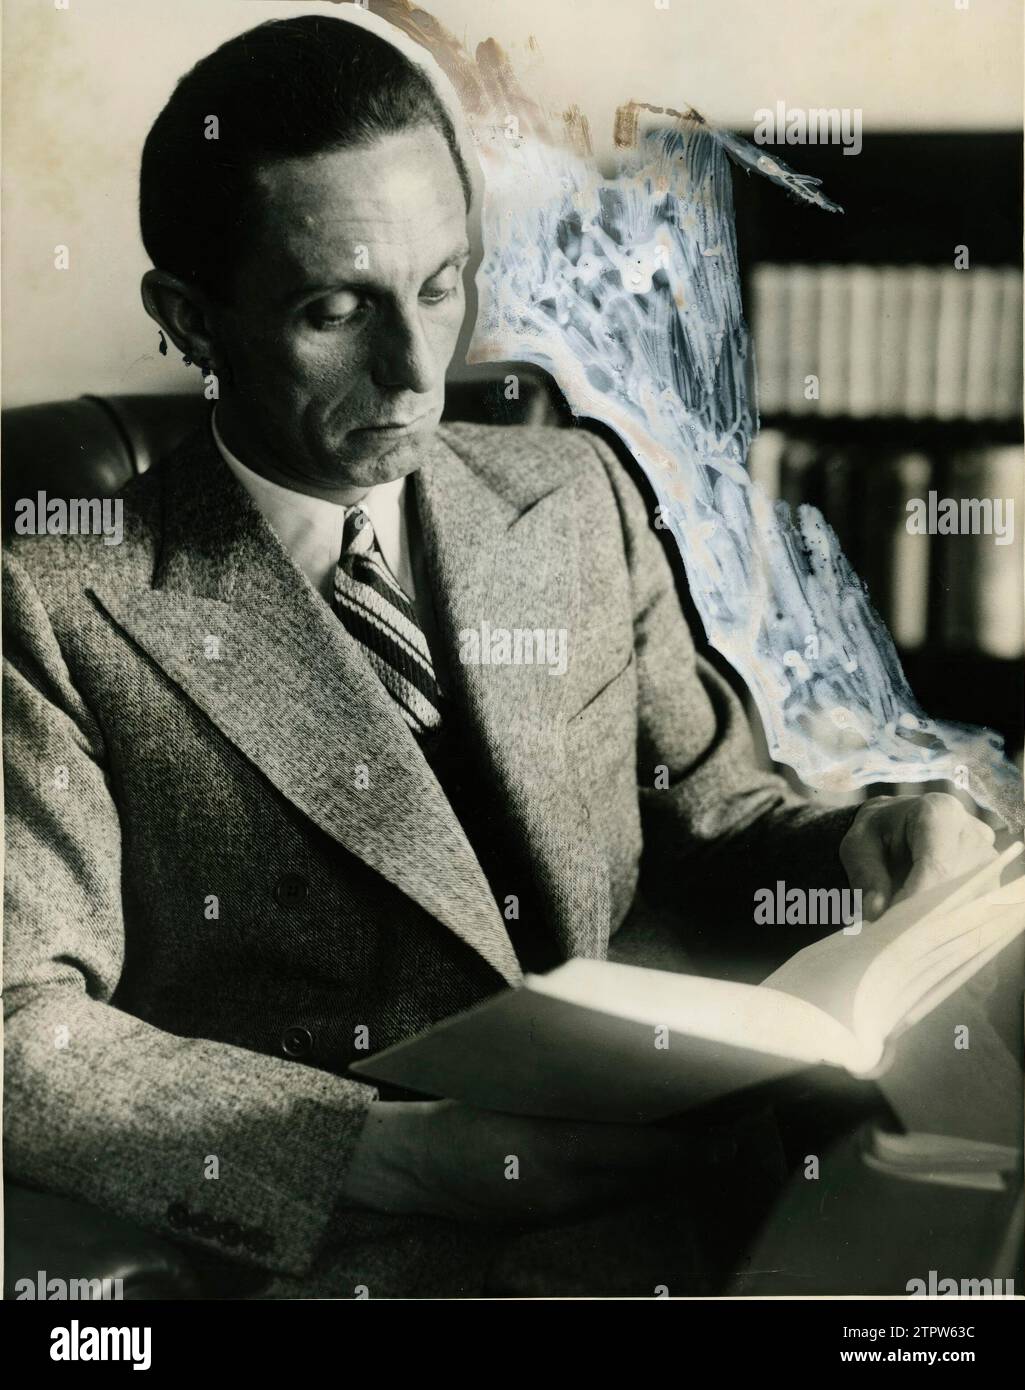 12/31/1934. Dr. Paul Joseph Goebbels, Propagandaminister des Dritten Reiches, eine der Hauptfiguren des NS-Deutschlands. Quelle: Album/Archivo ABC Stockfoto